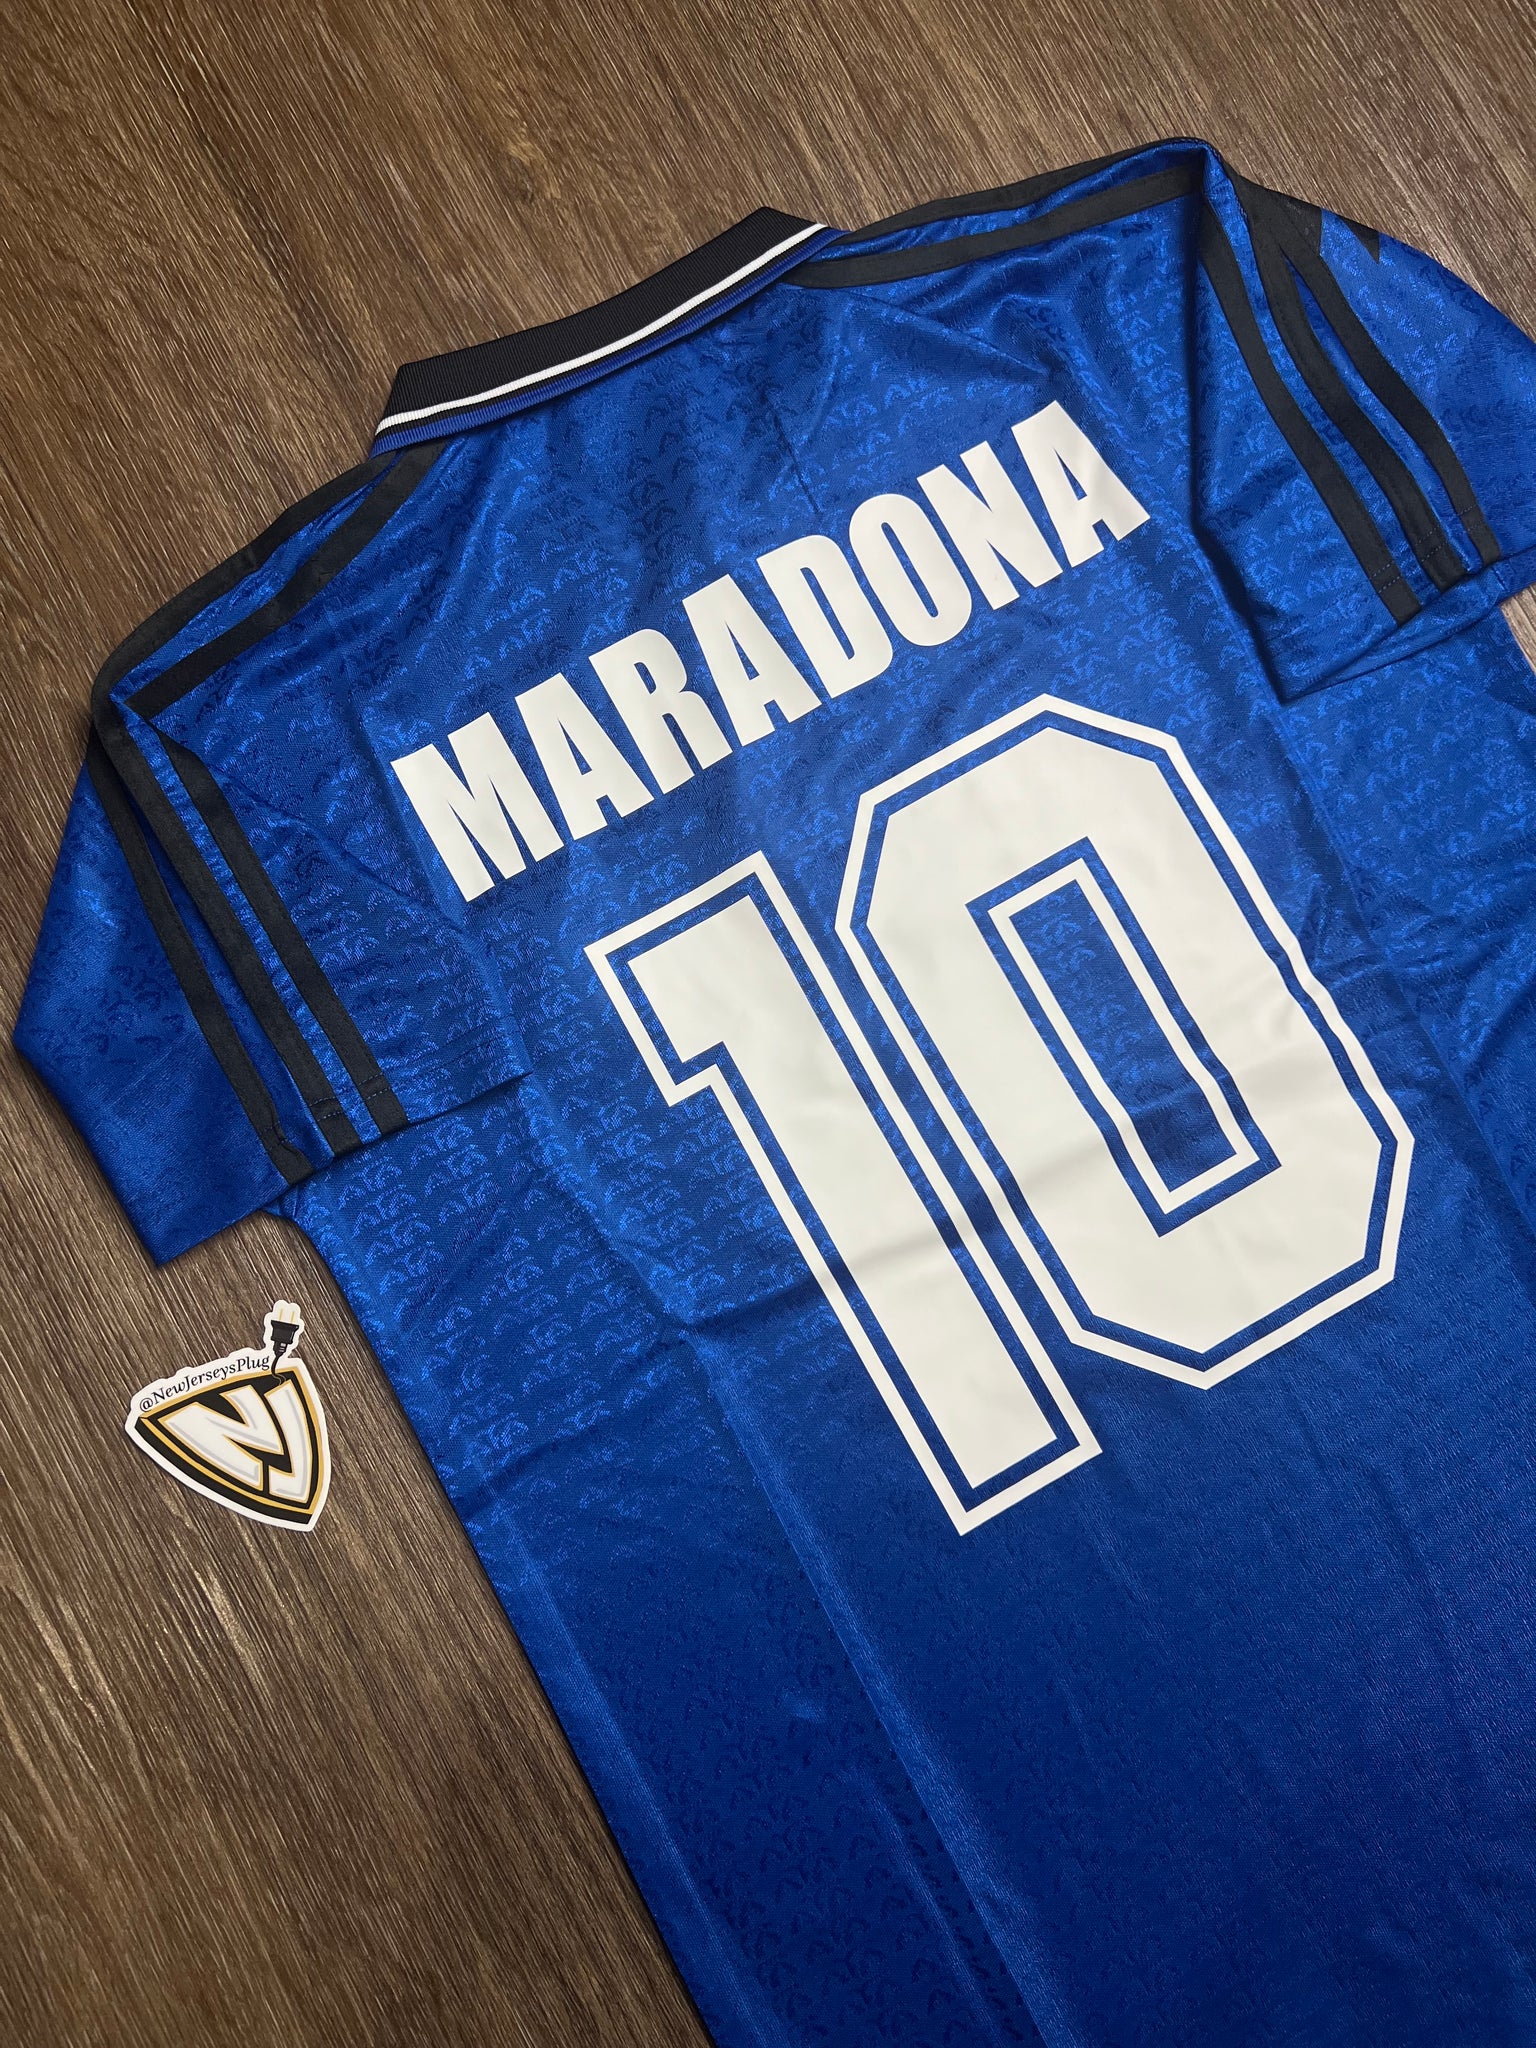 1994 Argentina Diego Maradona 10 Away Jersey